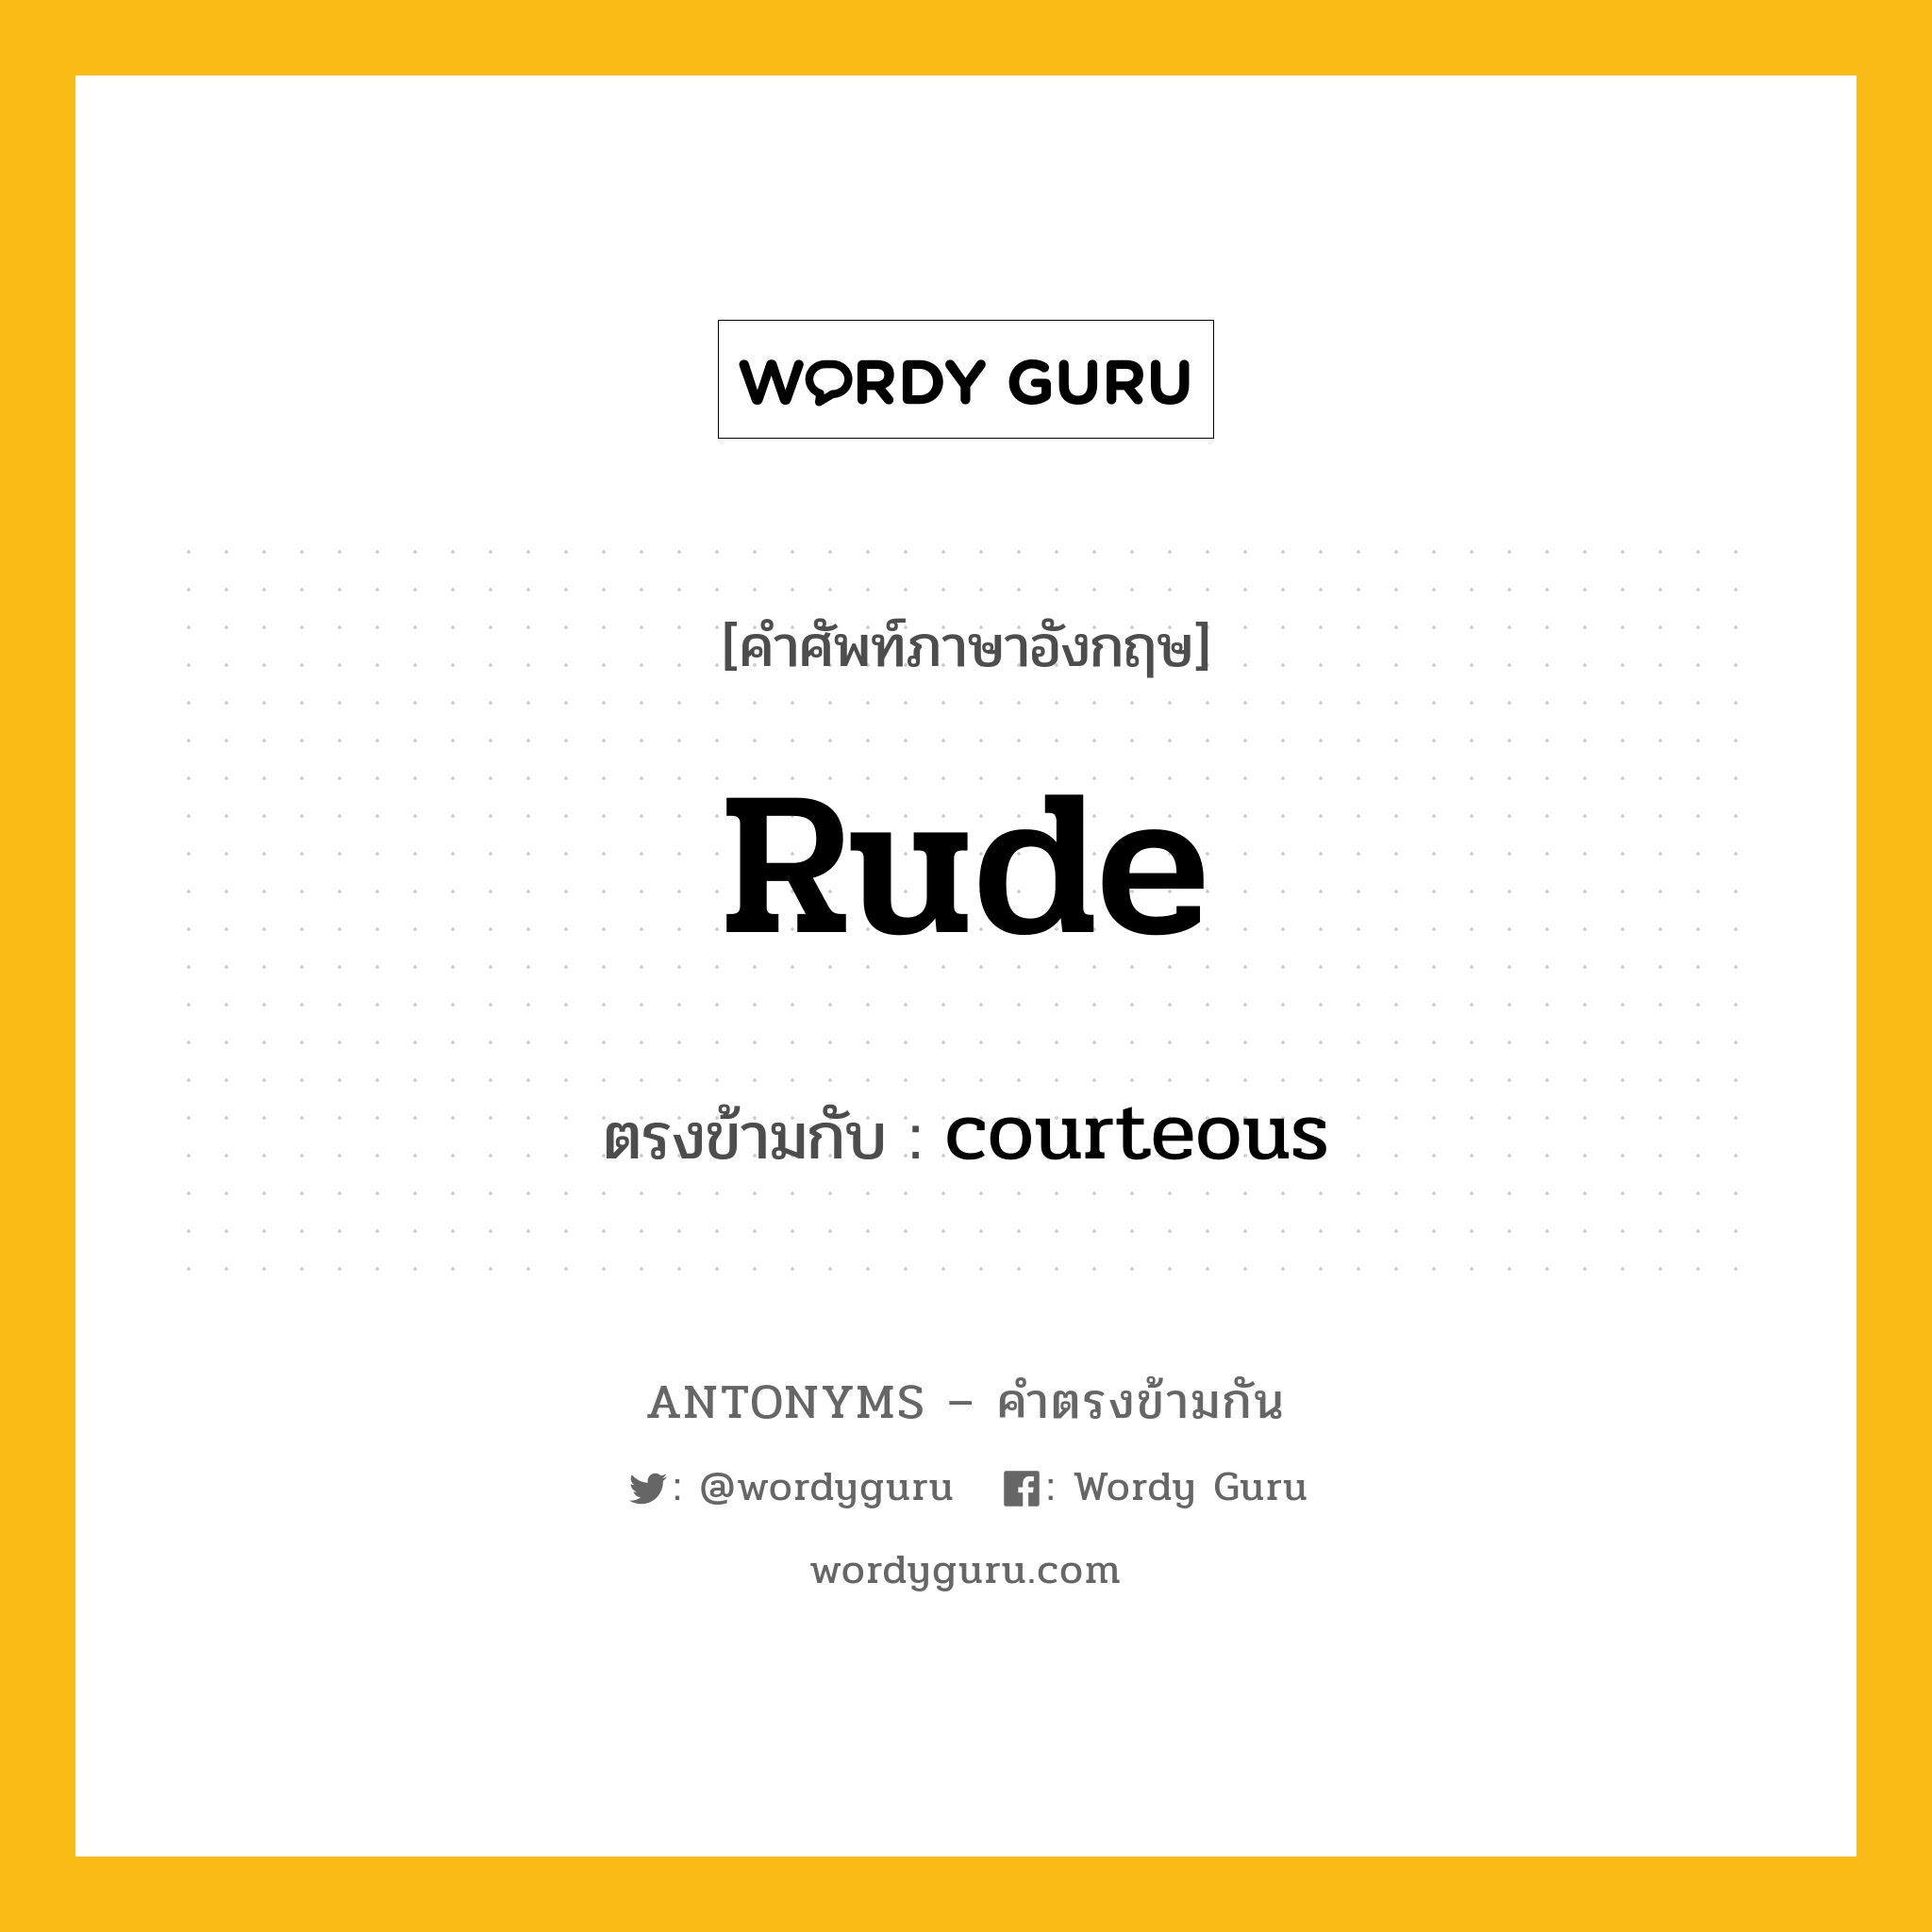 rude เป็นคำตรงข้ามกับคำไหนบ้าง?, คำศัพท์ภาษาอังกฤษ rude ตรงข้ามกับ courteous หมวด courteous